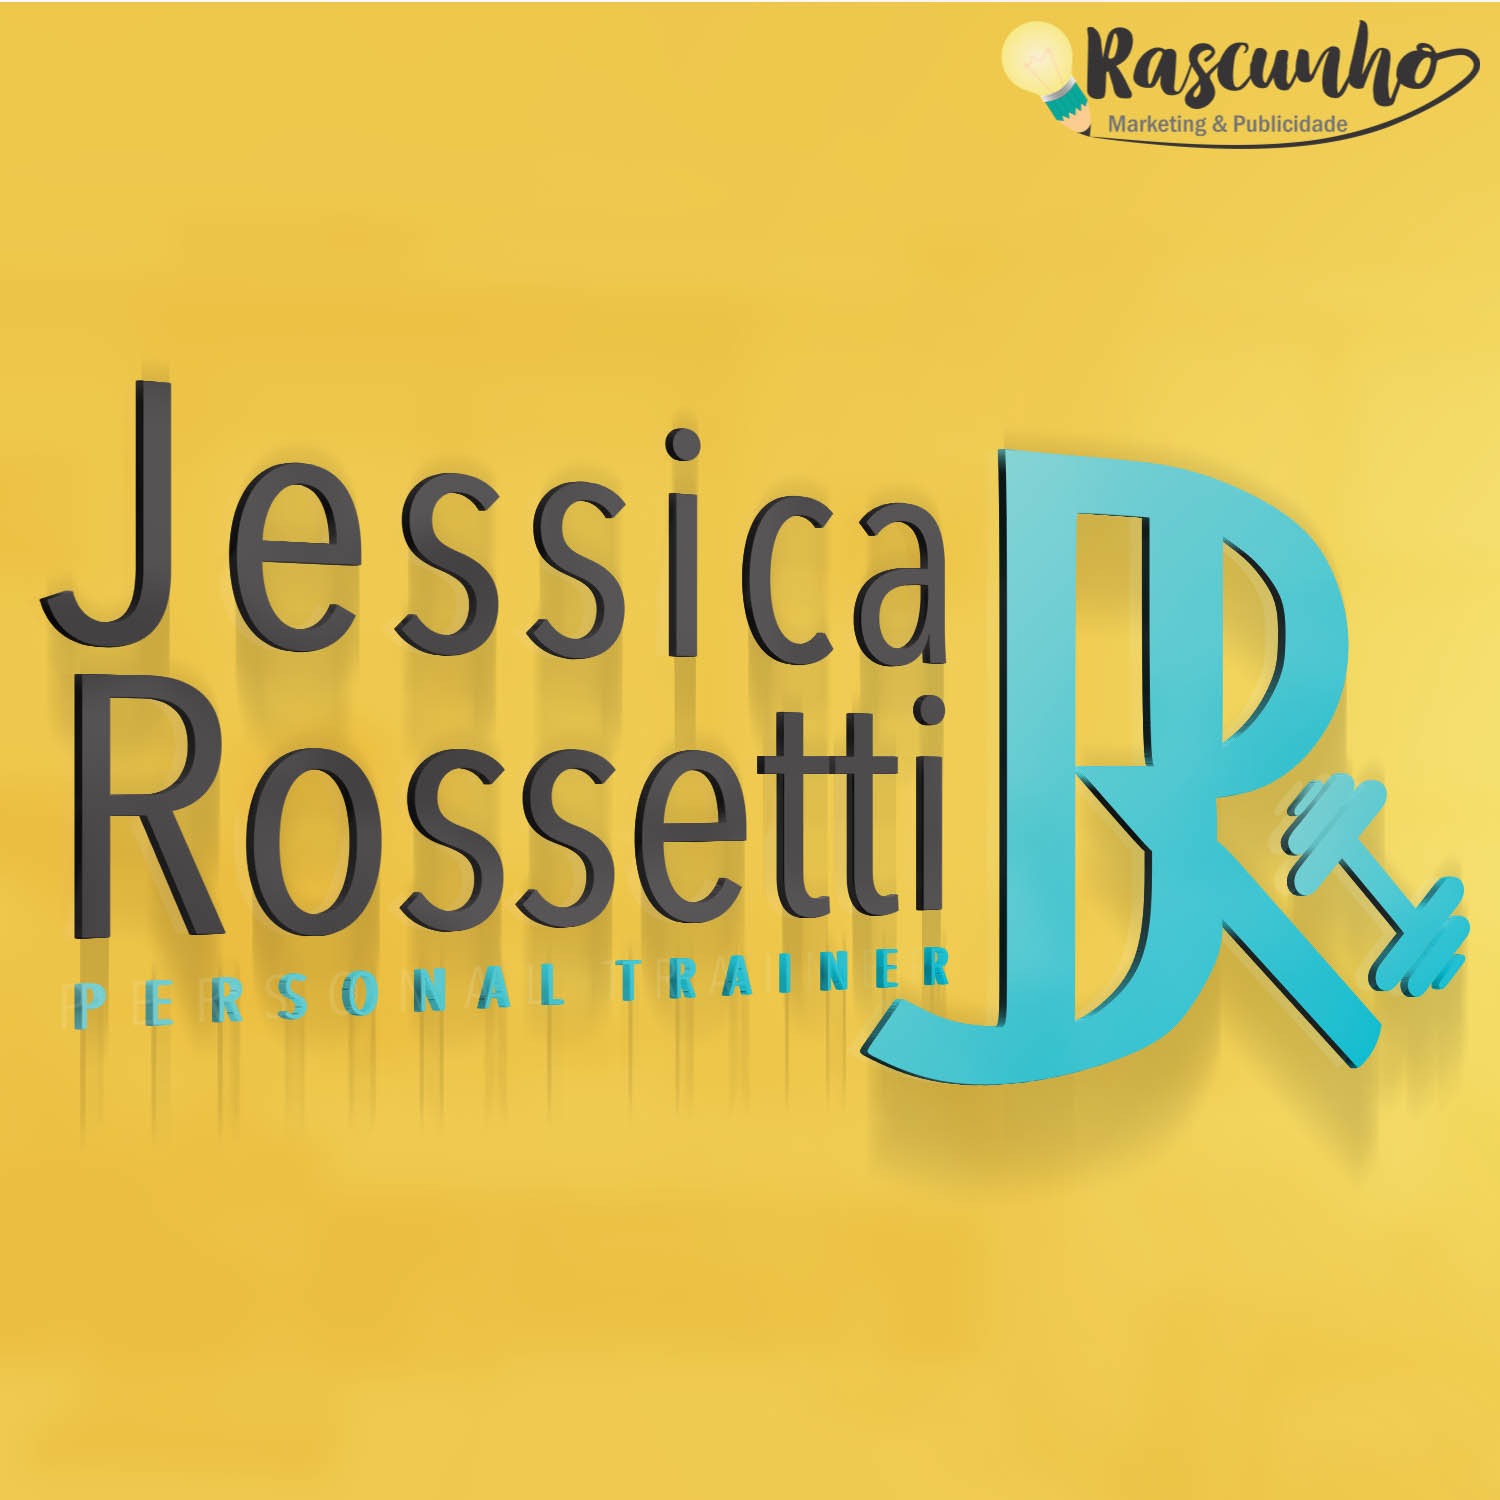 Jessica Rossetti - Personal Trainer 1